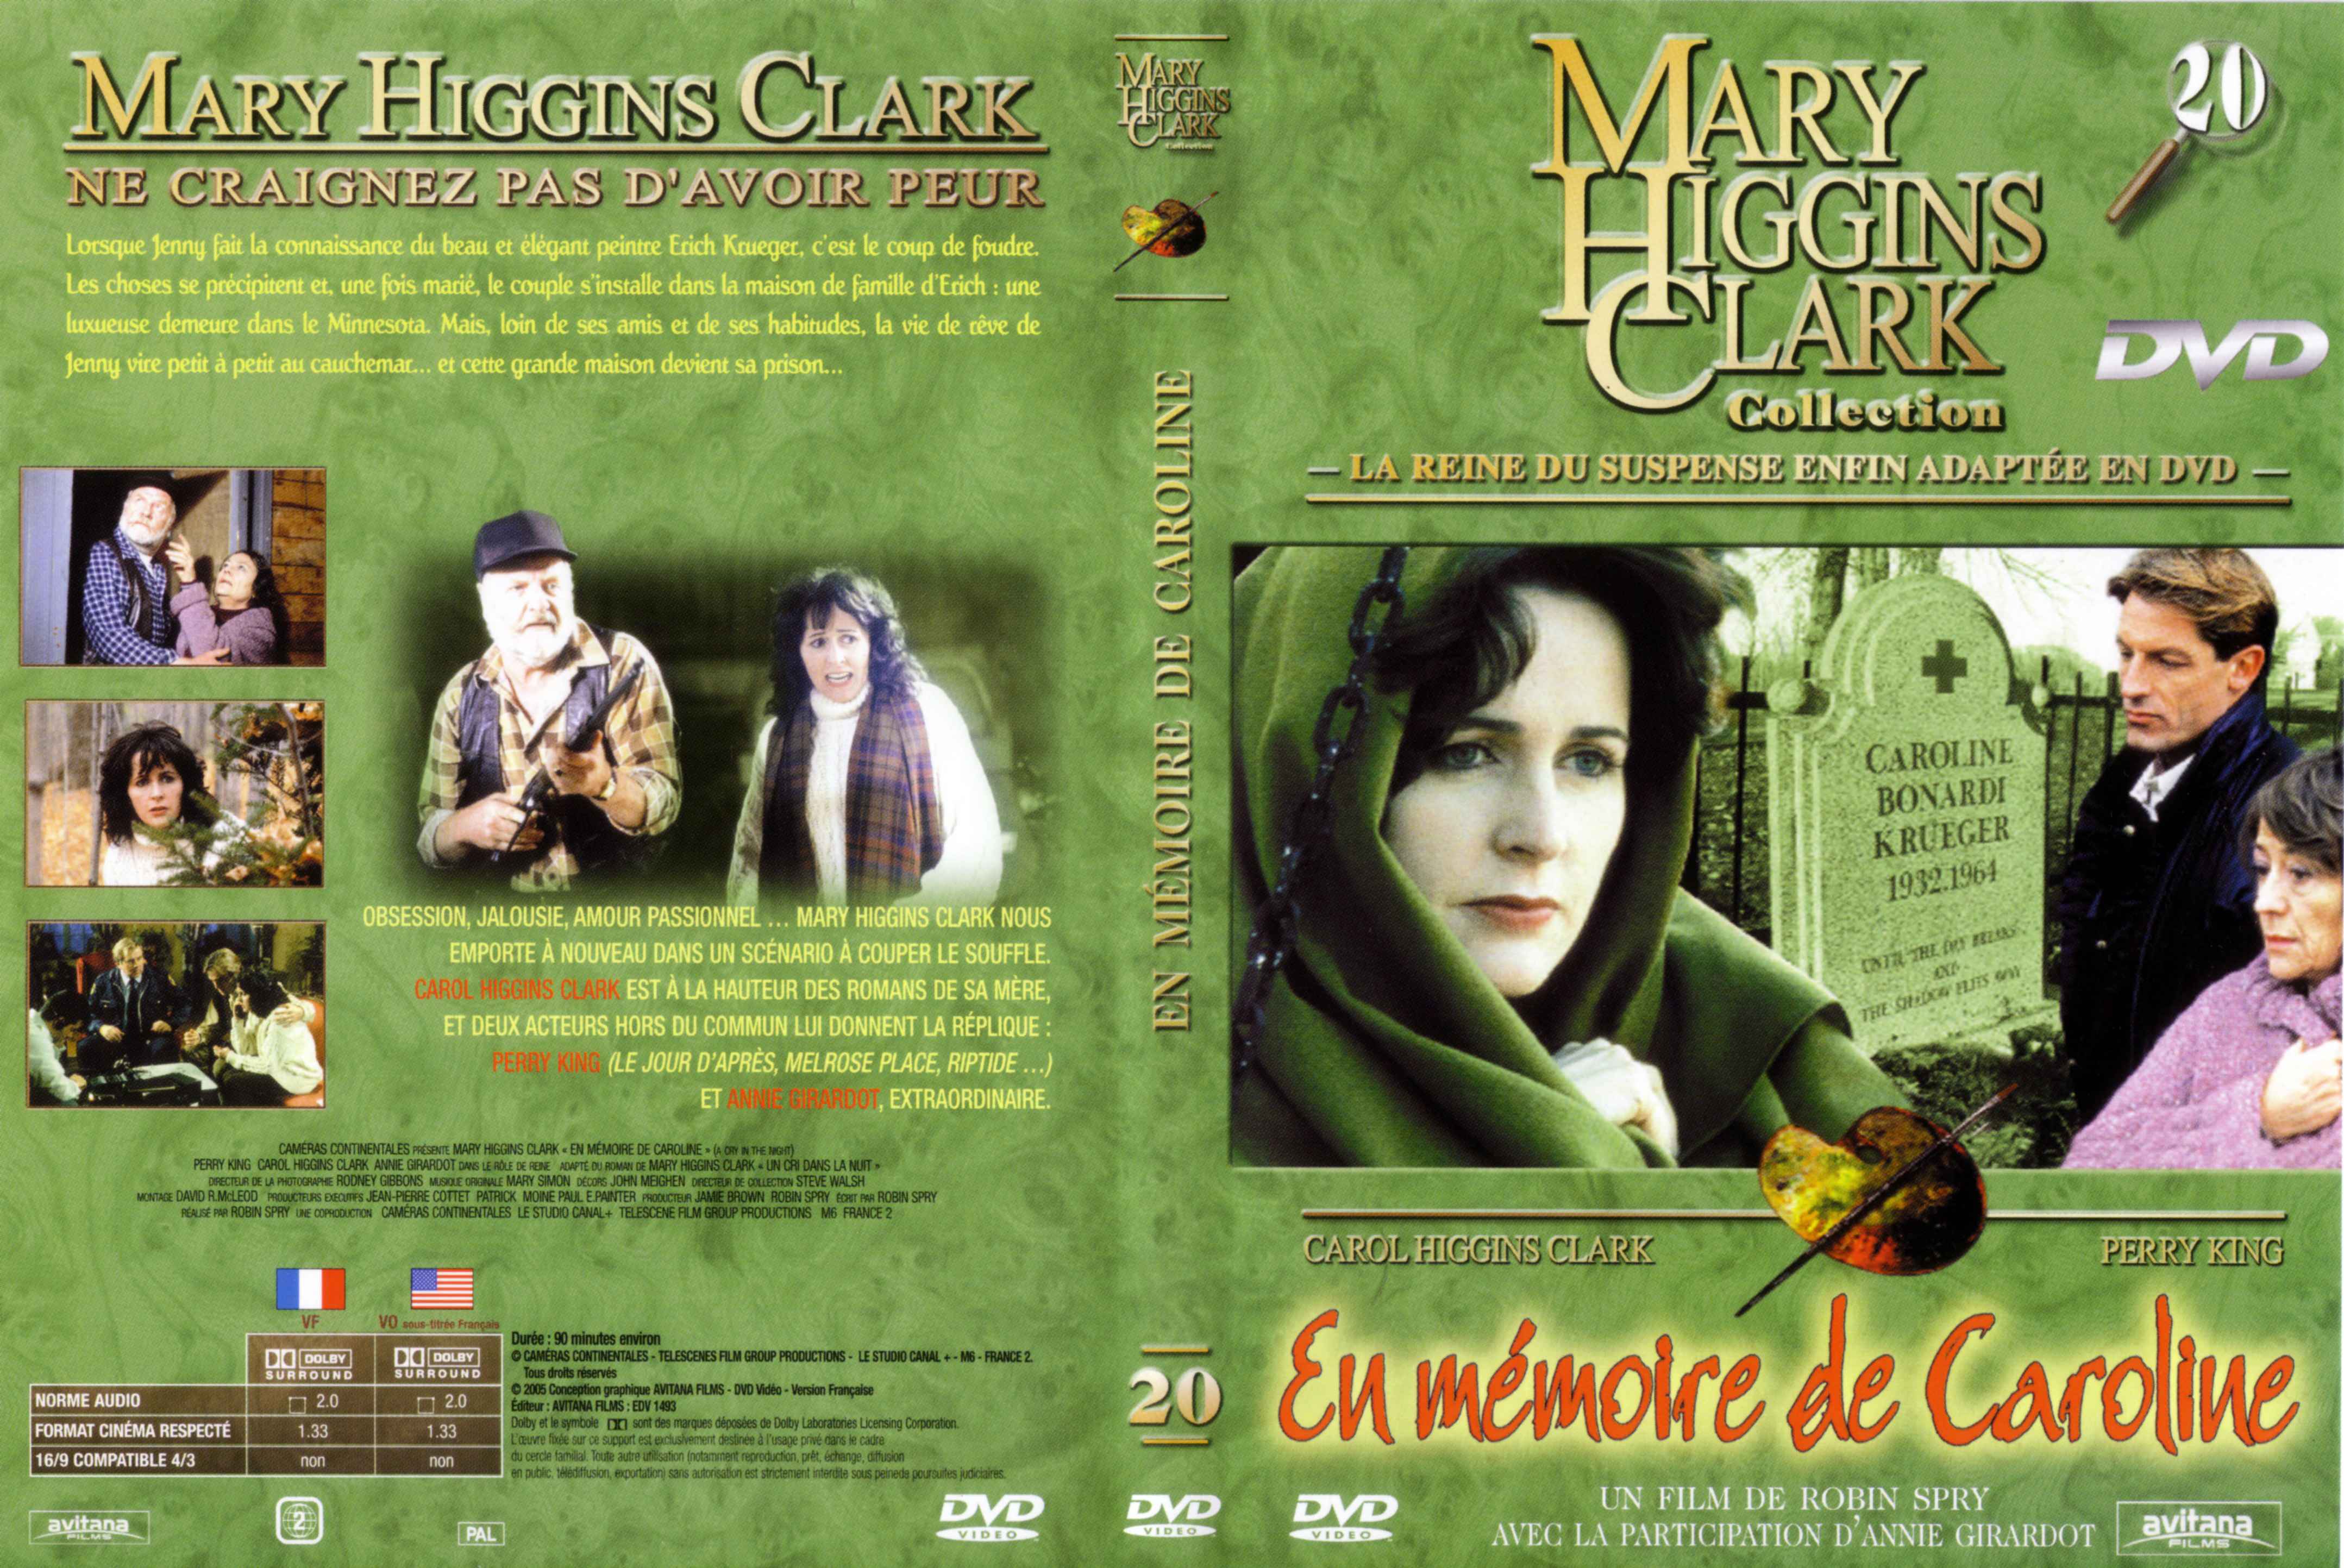 Jaquette DVD de Mary Higgins Clark vol 20 - En mémoire de Caroline - Cinéma Passion4314 x 2886